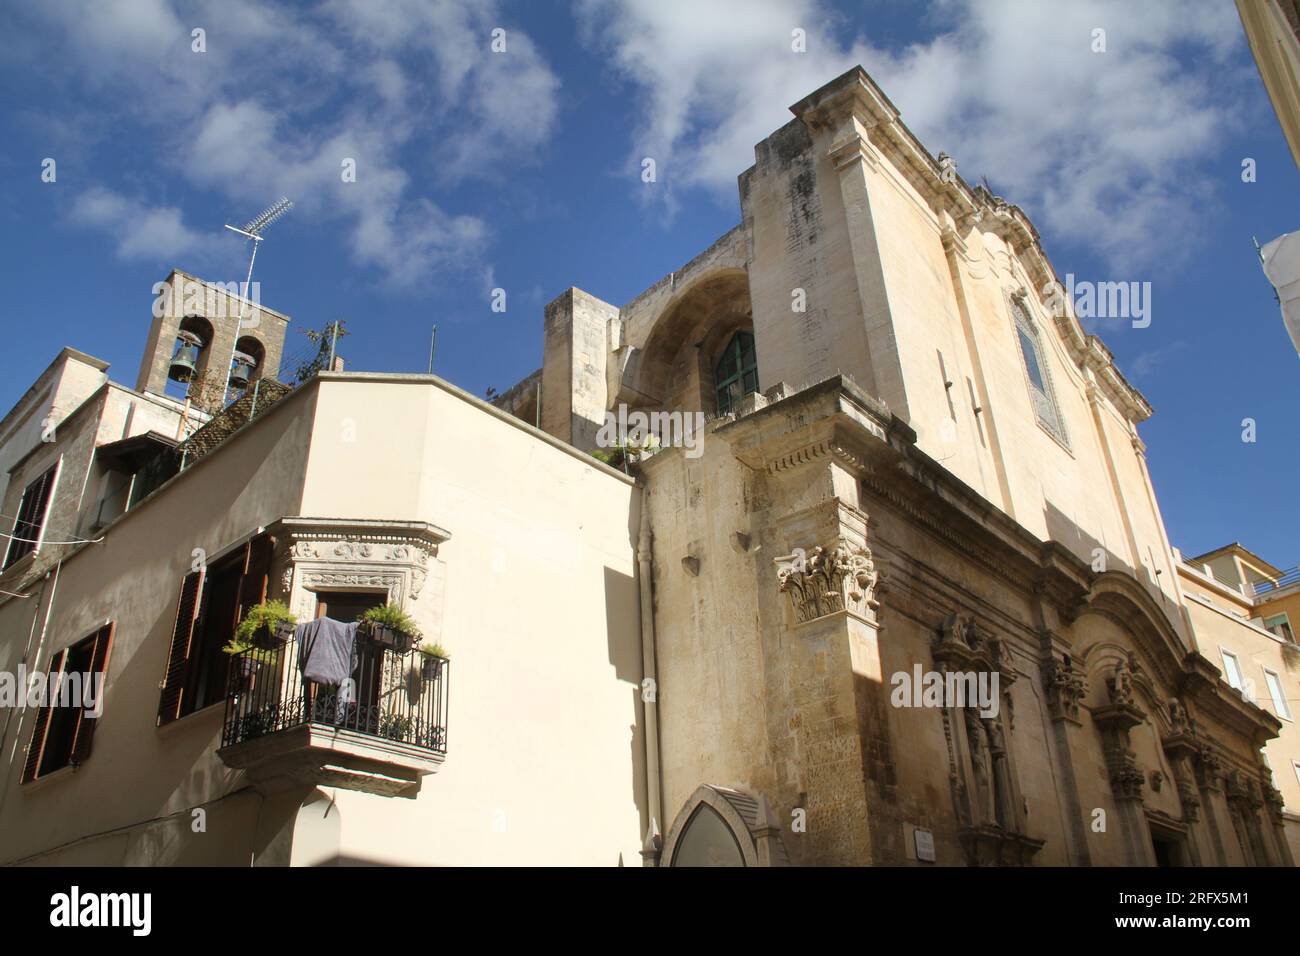 Lecce, Italie. Vue extérieure de l'église Saint Antoine de la place (Chiesa di Sant'Antonio della Piazza) et des bâtiments adjacents. Banque D'Images